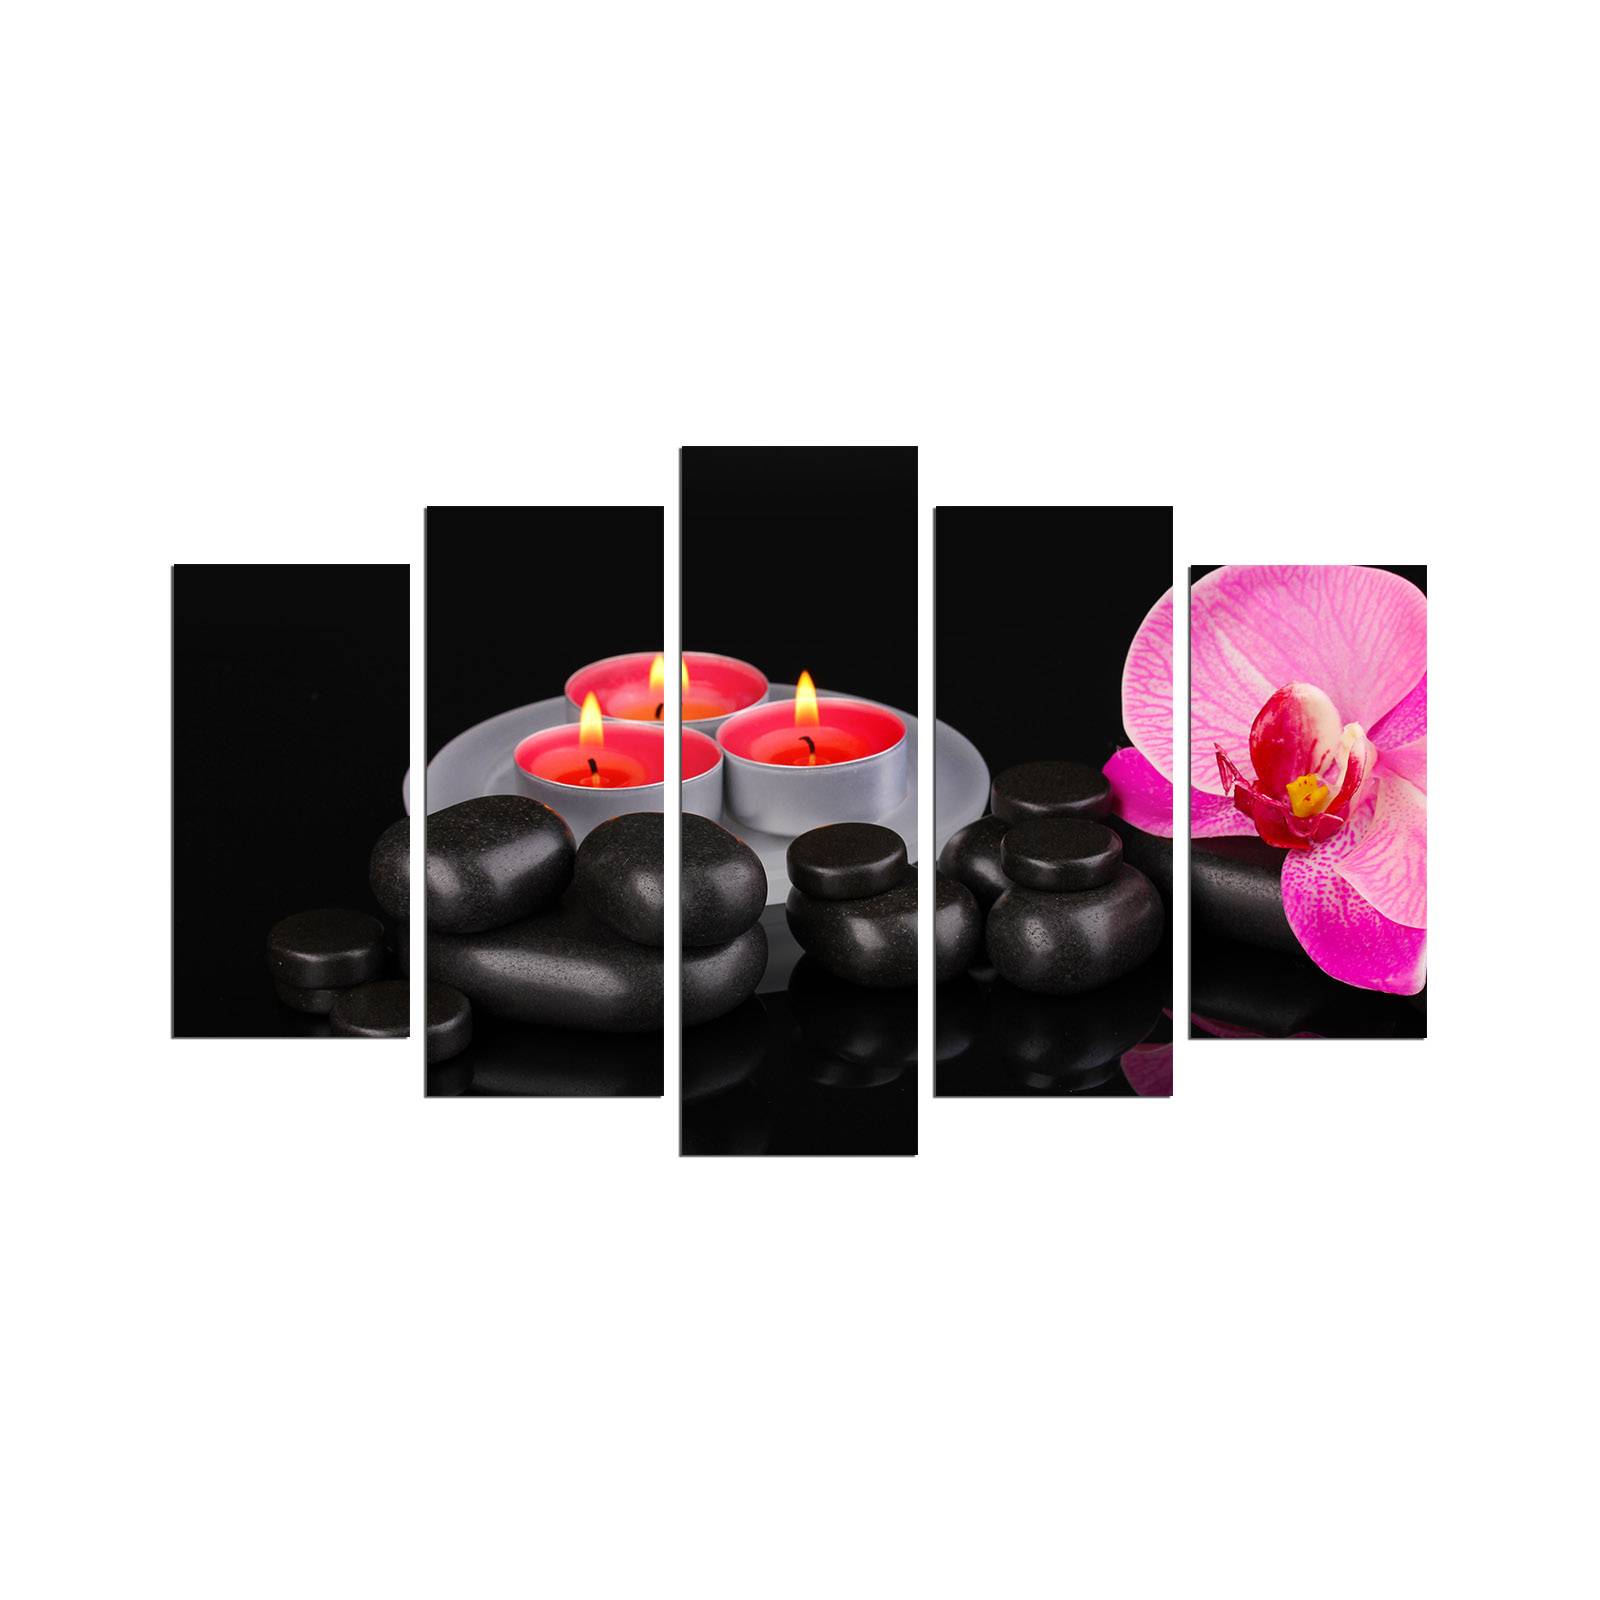 Pentáptico Atos Negro Orquídea Patrón de Spa y velas grises, rojas y rosas